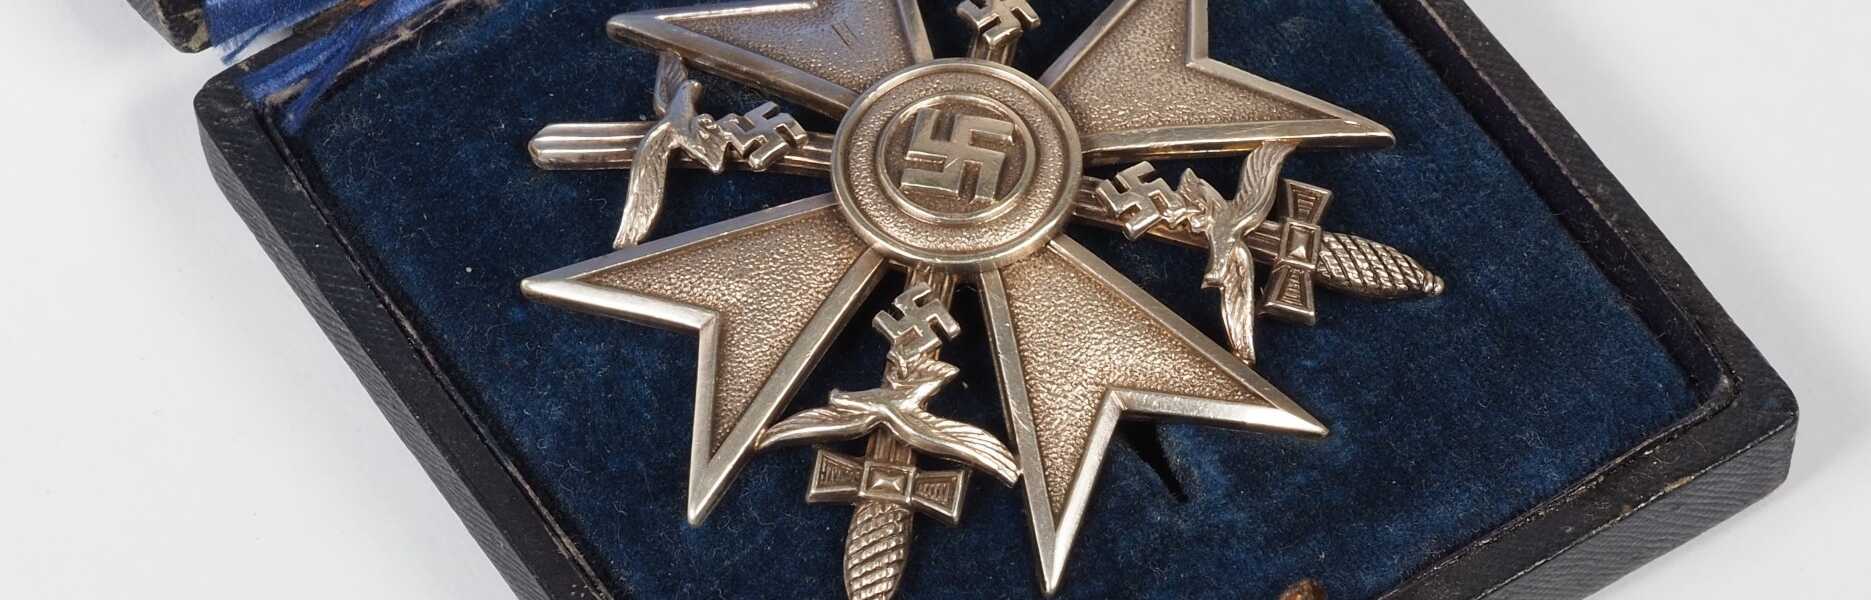 Spanienkreuz in Silber mit Schwertern im Etui